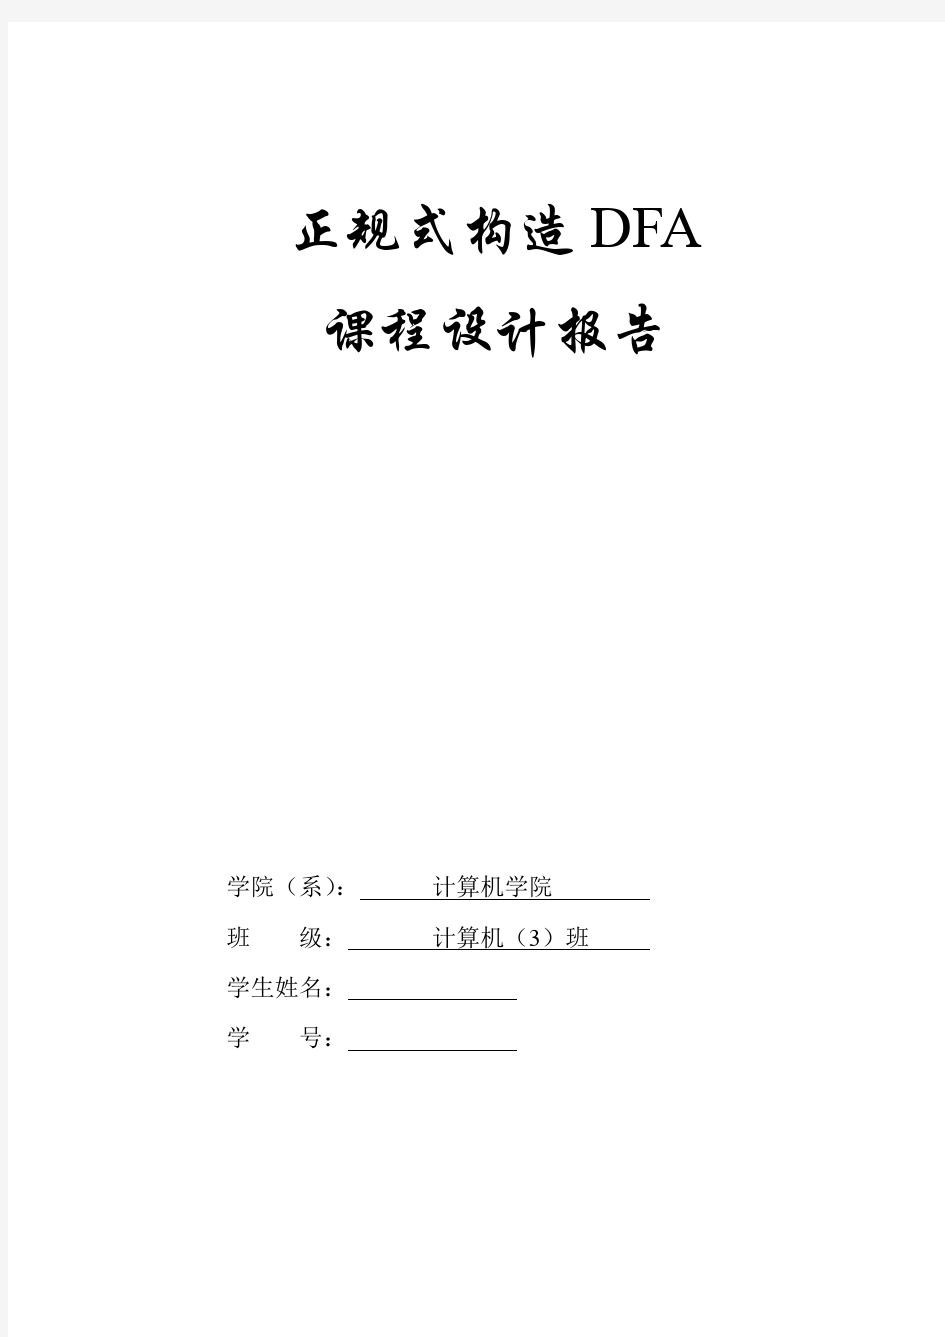 正规式构造dfa